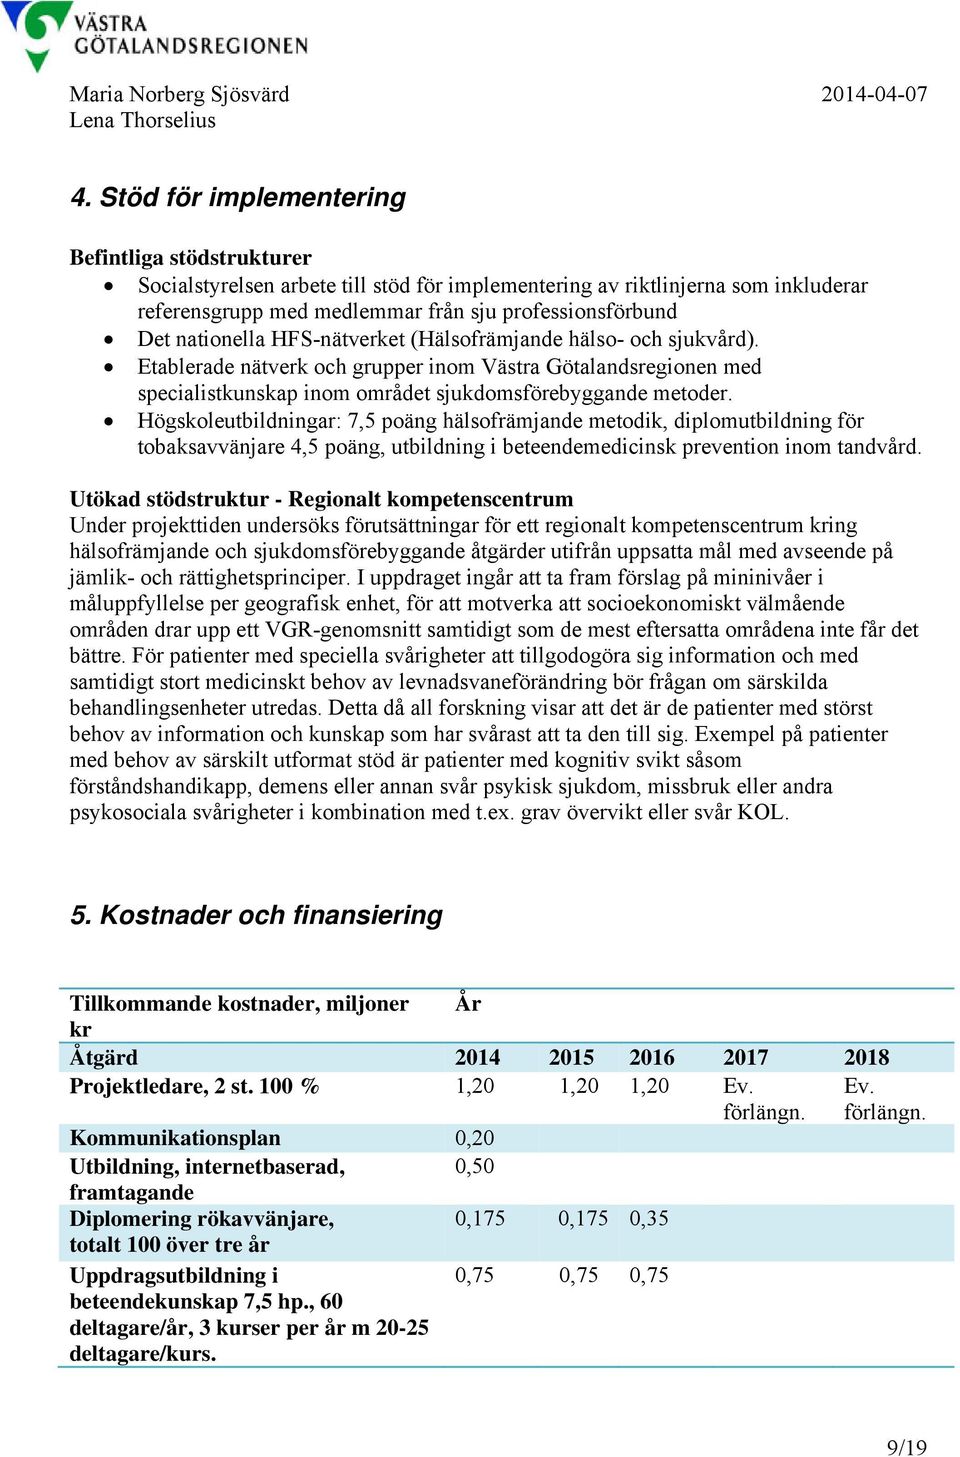 nationella HFS-nätverket (Hälsofrämjande hälso- och sjukvård). Etablerade nätverk och grupper inom Västra Götalandsregionen med specialistkunskap inom området sjukdomsförebyggande metoder.